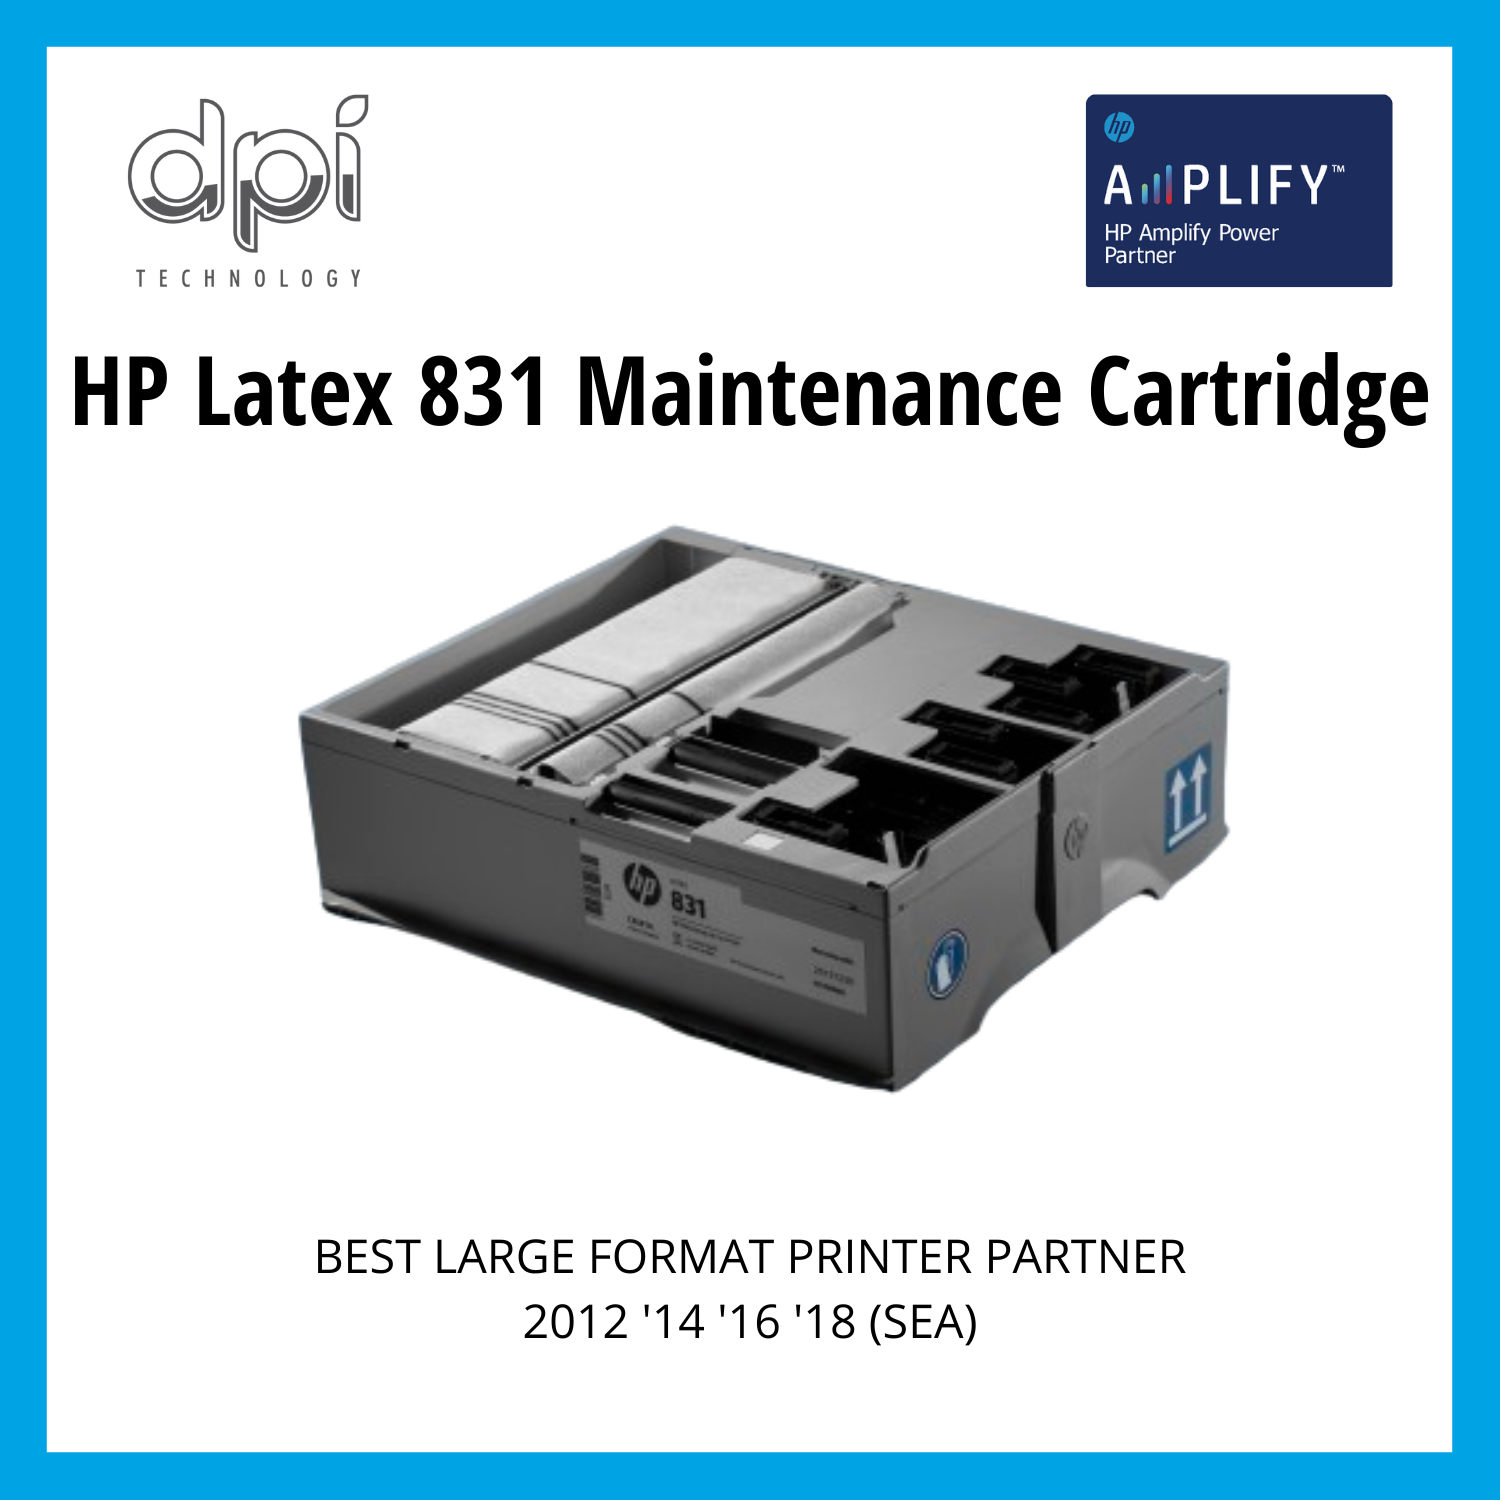 HP Latex 831 Maintenance Cartridge